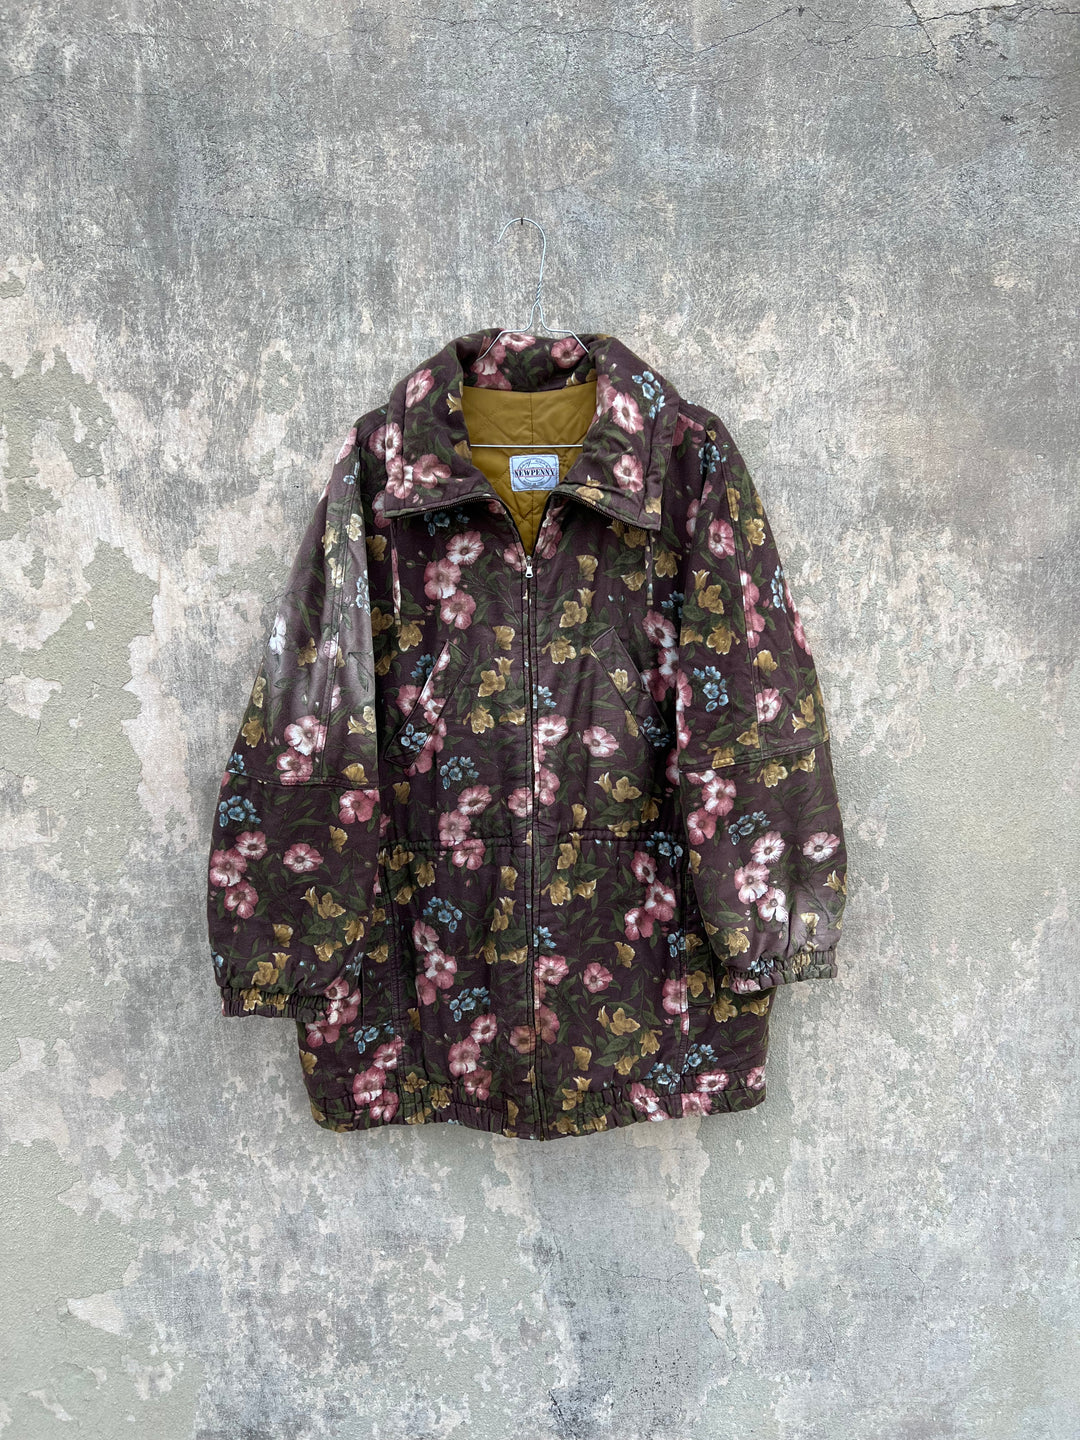 Vintage 90’s New Penny Floral Coat Jacket Women’s M/L